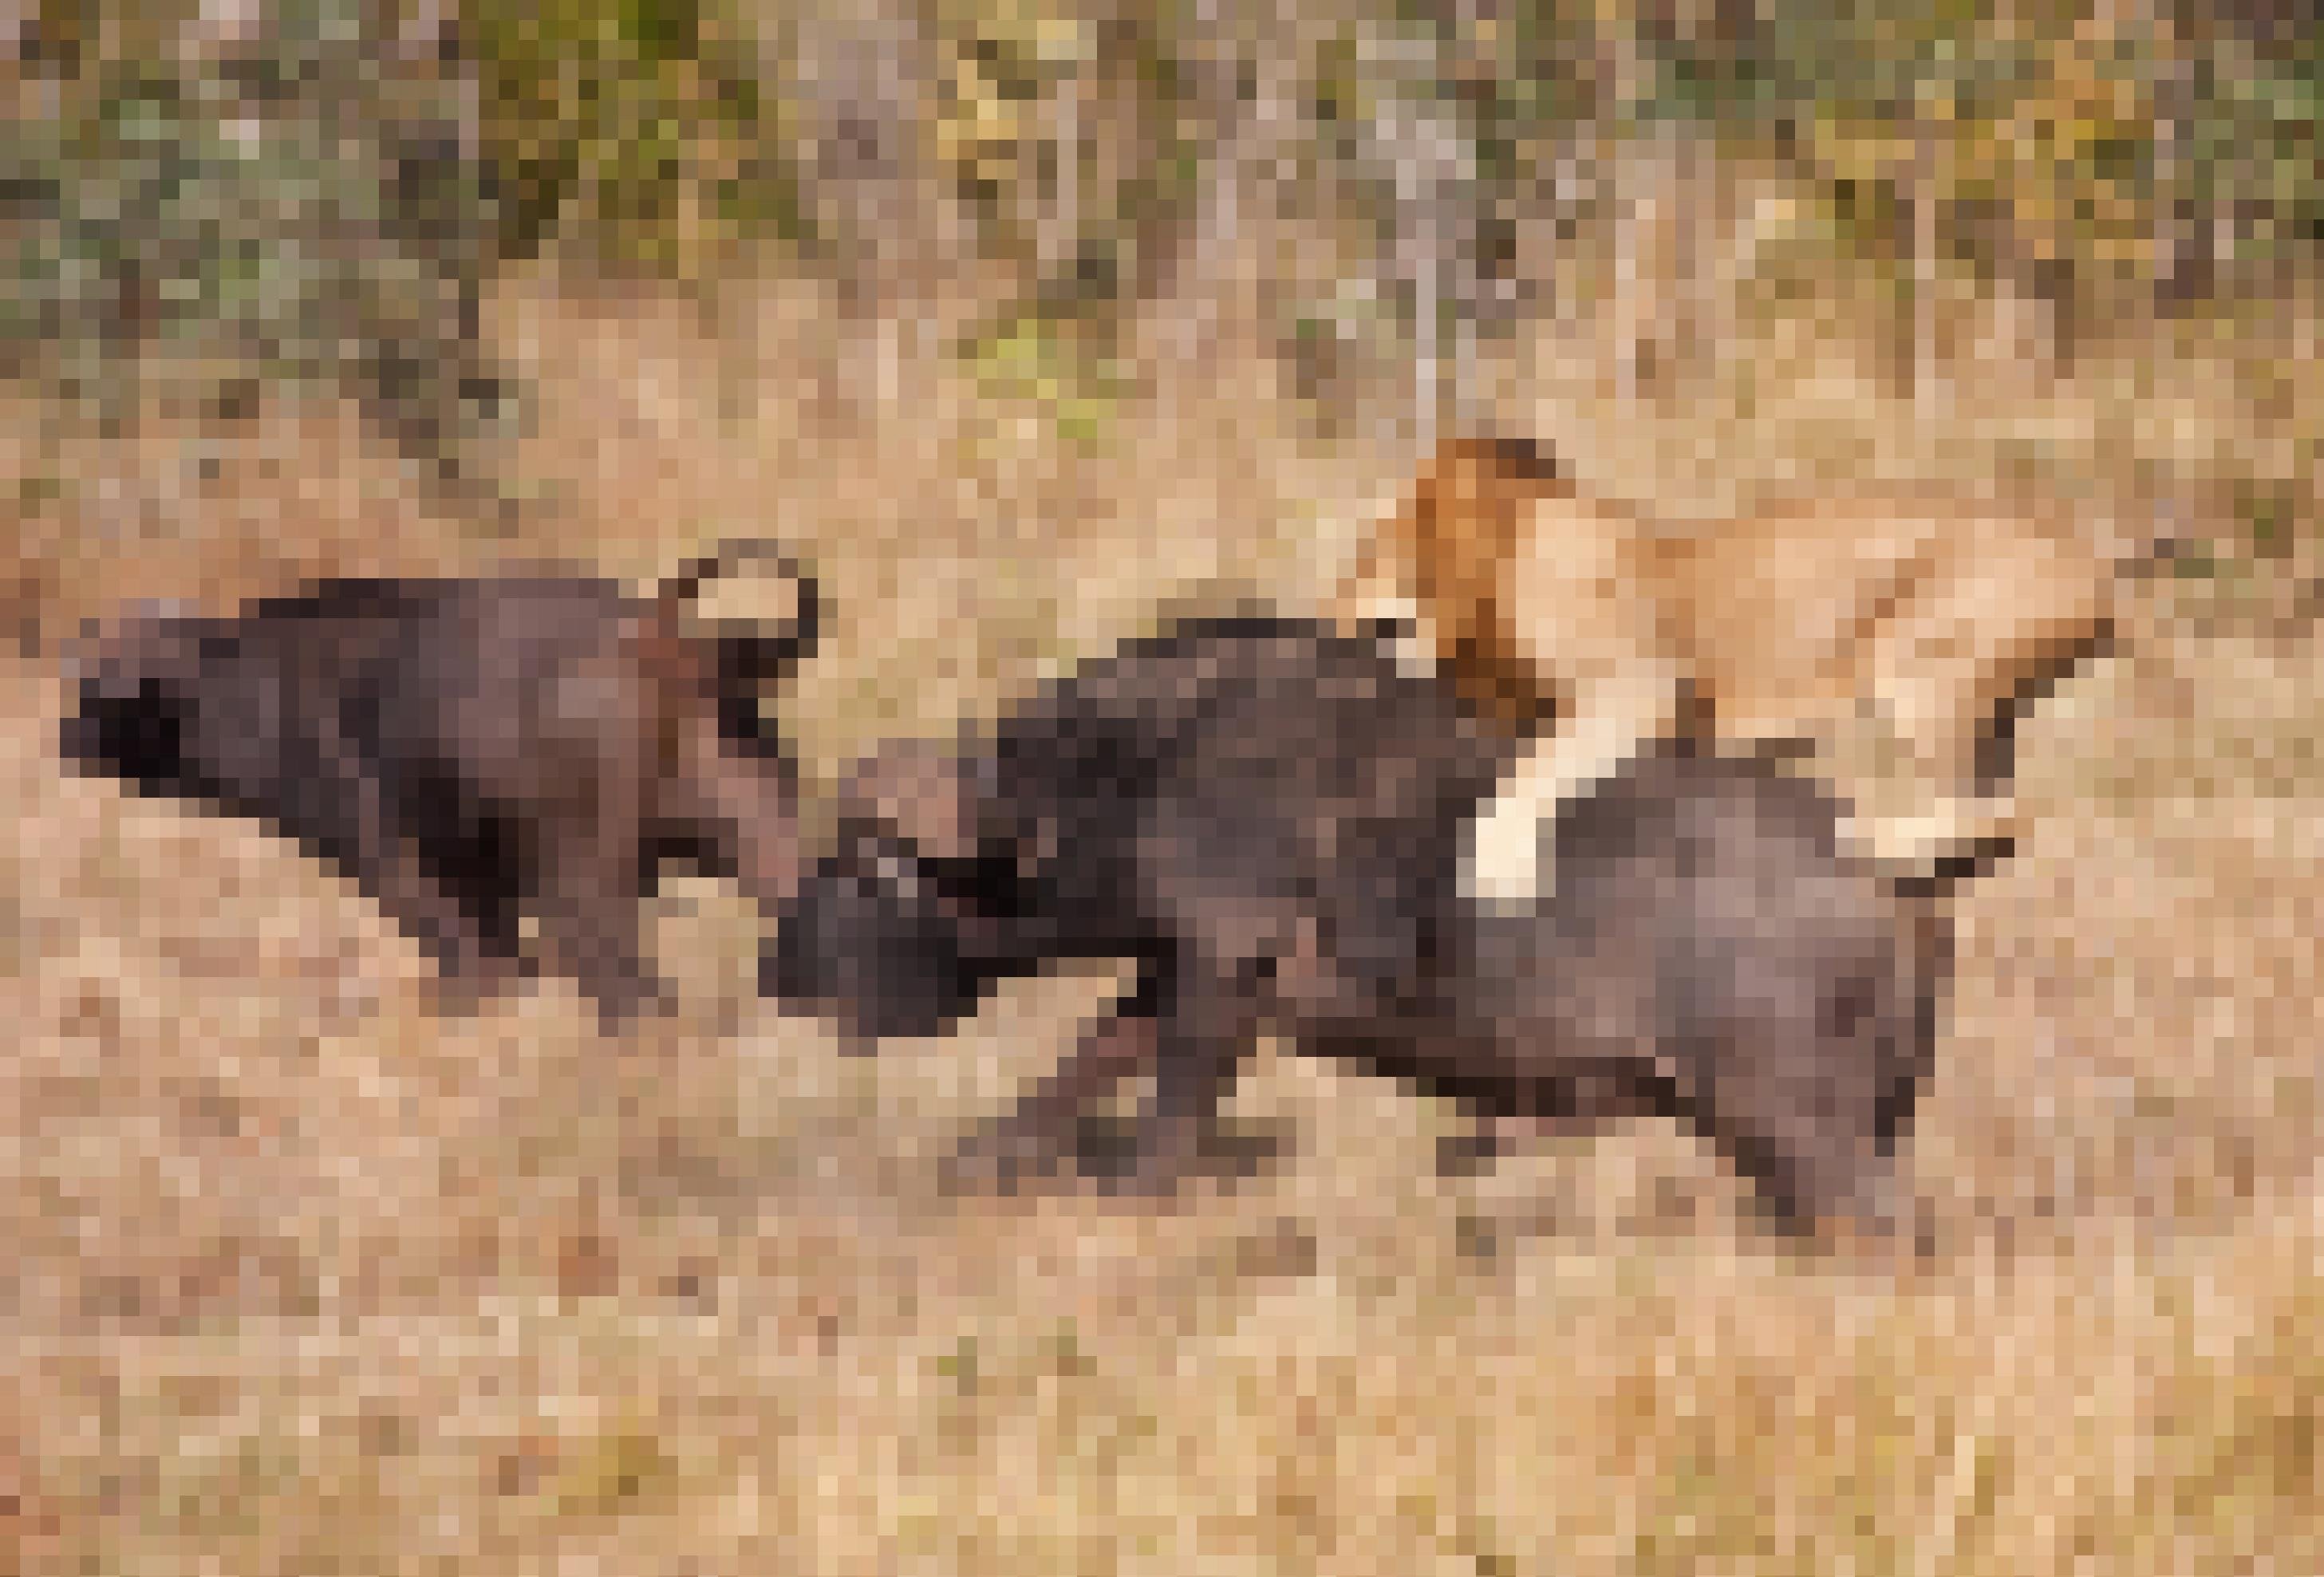 Das Foto zeigt einen männlichen Löwen, der auf den Rücken eines mächtigen, dunkelbrauen Büffels gesprungen ist, sich dort mit allen vier Pfoten festkrallt und versucht, seinem Opfer in die Schulter zu beißen. Links davon rennt ein weiterer Büffel in höchstem Tempo davon. Die Jagdszens spielt sich in der afrikanischen Savanne ab.